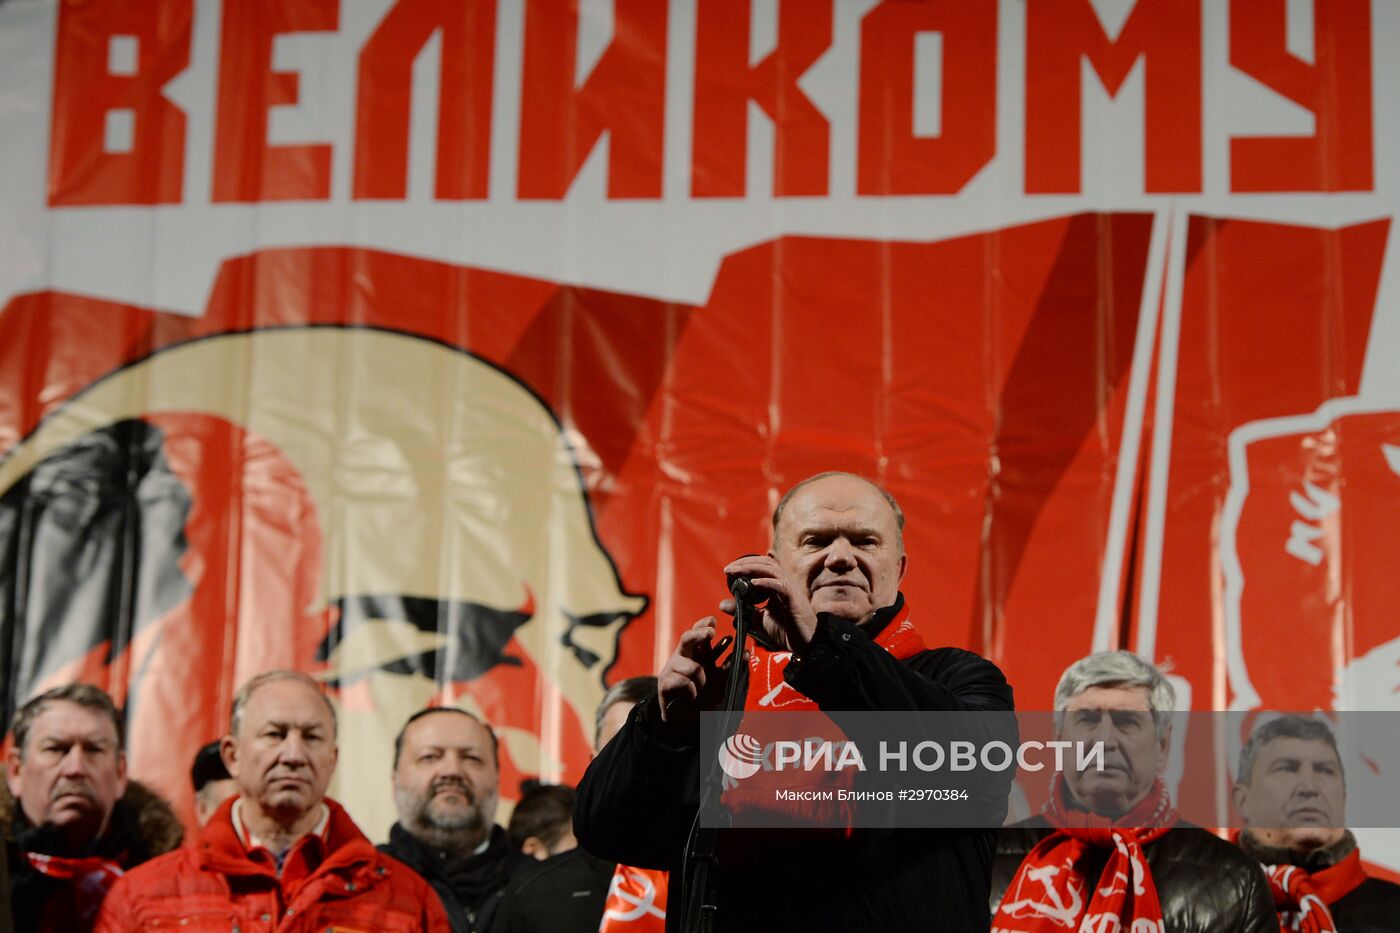 Мероприятия, посвященные 99-й годовщине Великой Октябрьской социалистической революции, в Москве